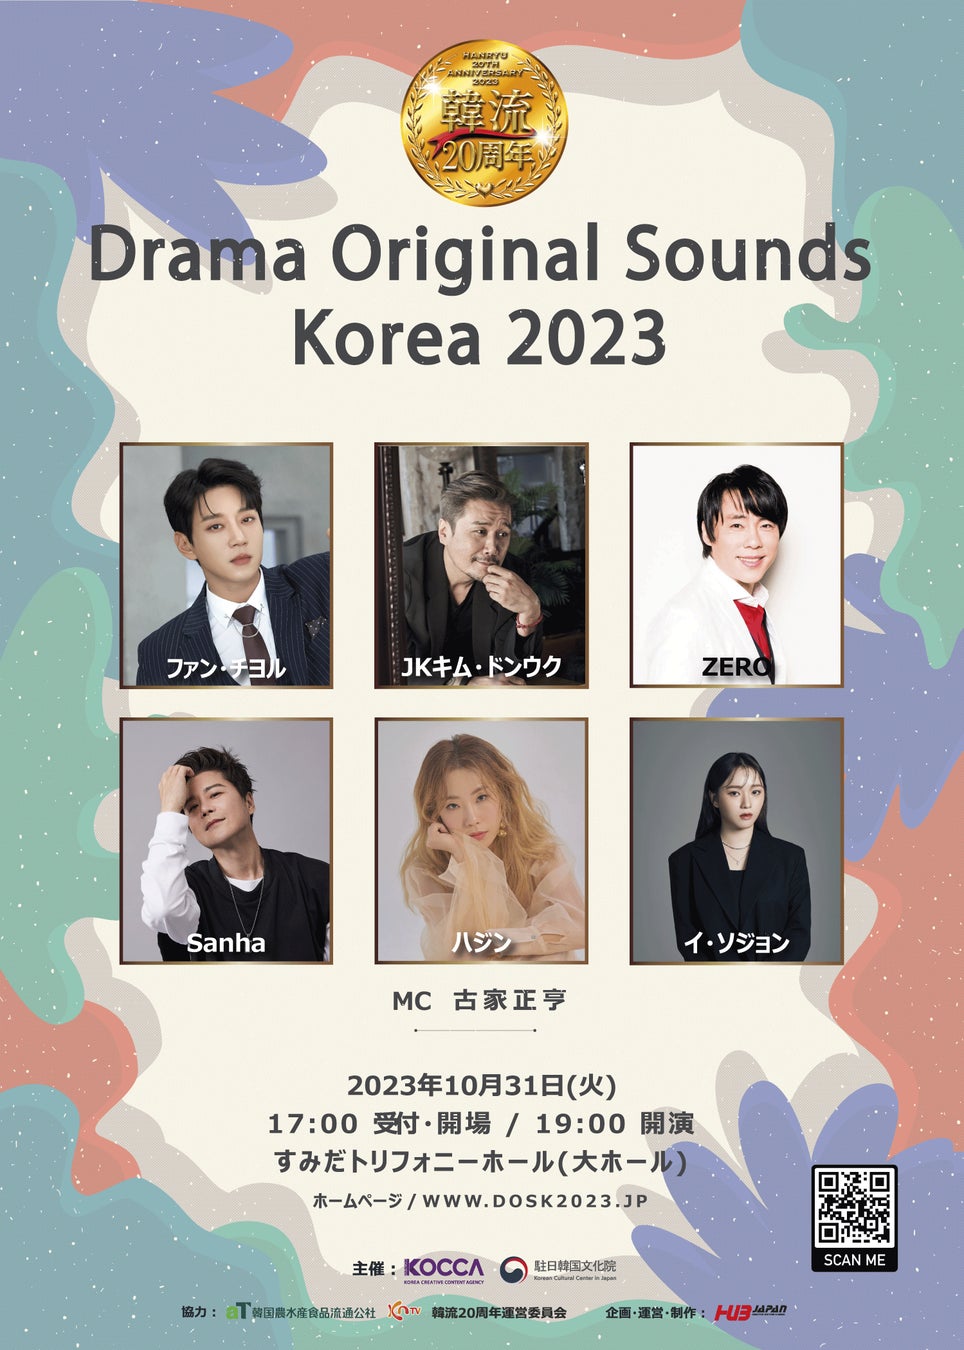 ファン・チヨル, JKキム・ドンウクなど出演する『韓流20周年記念 Drama Original Sounds Korea 2023』コンサート4年ぶりに開催のサブ画像1